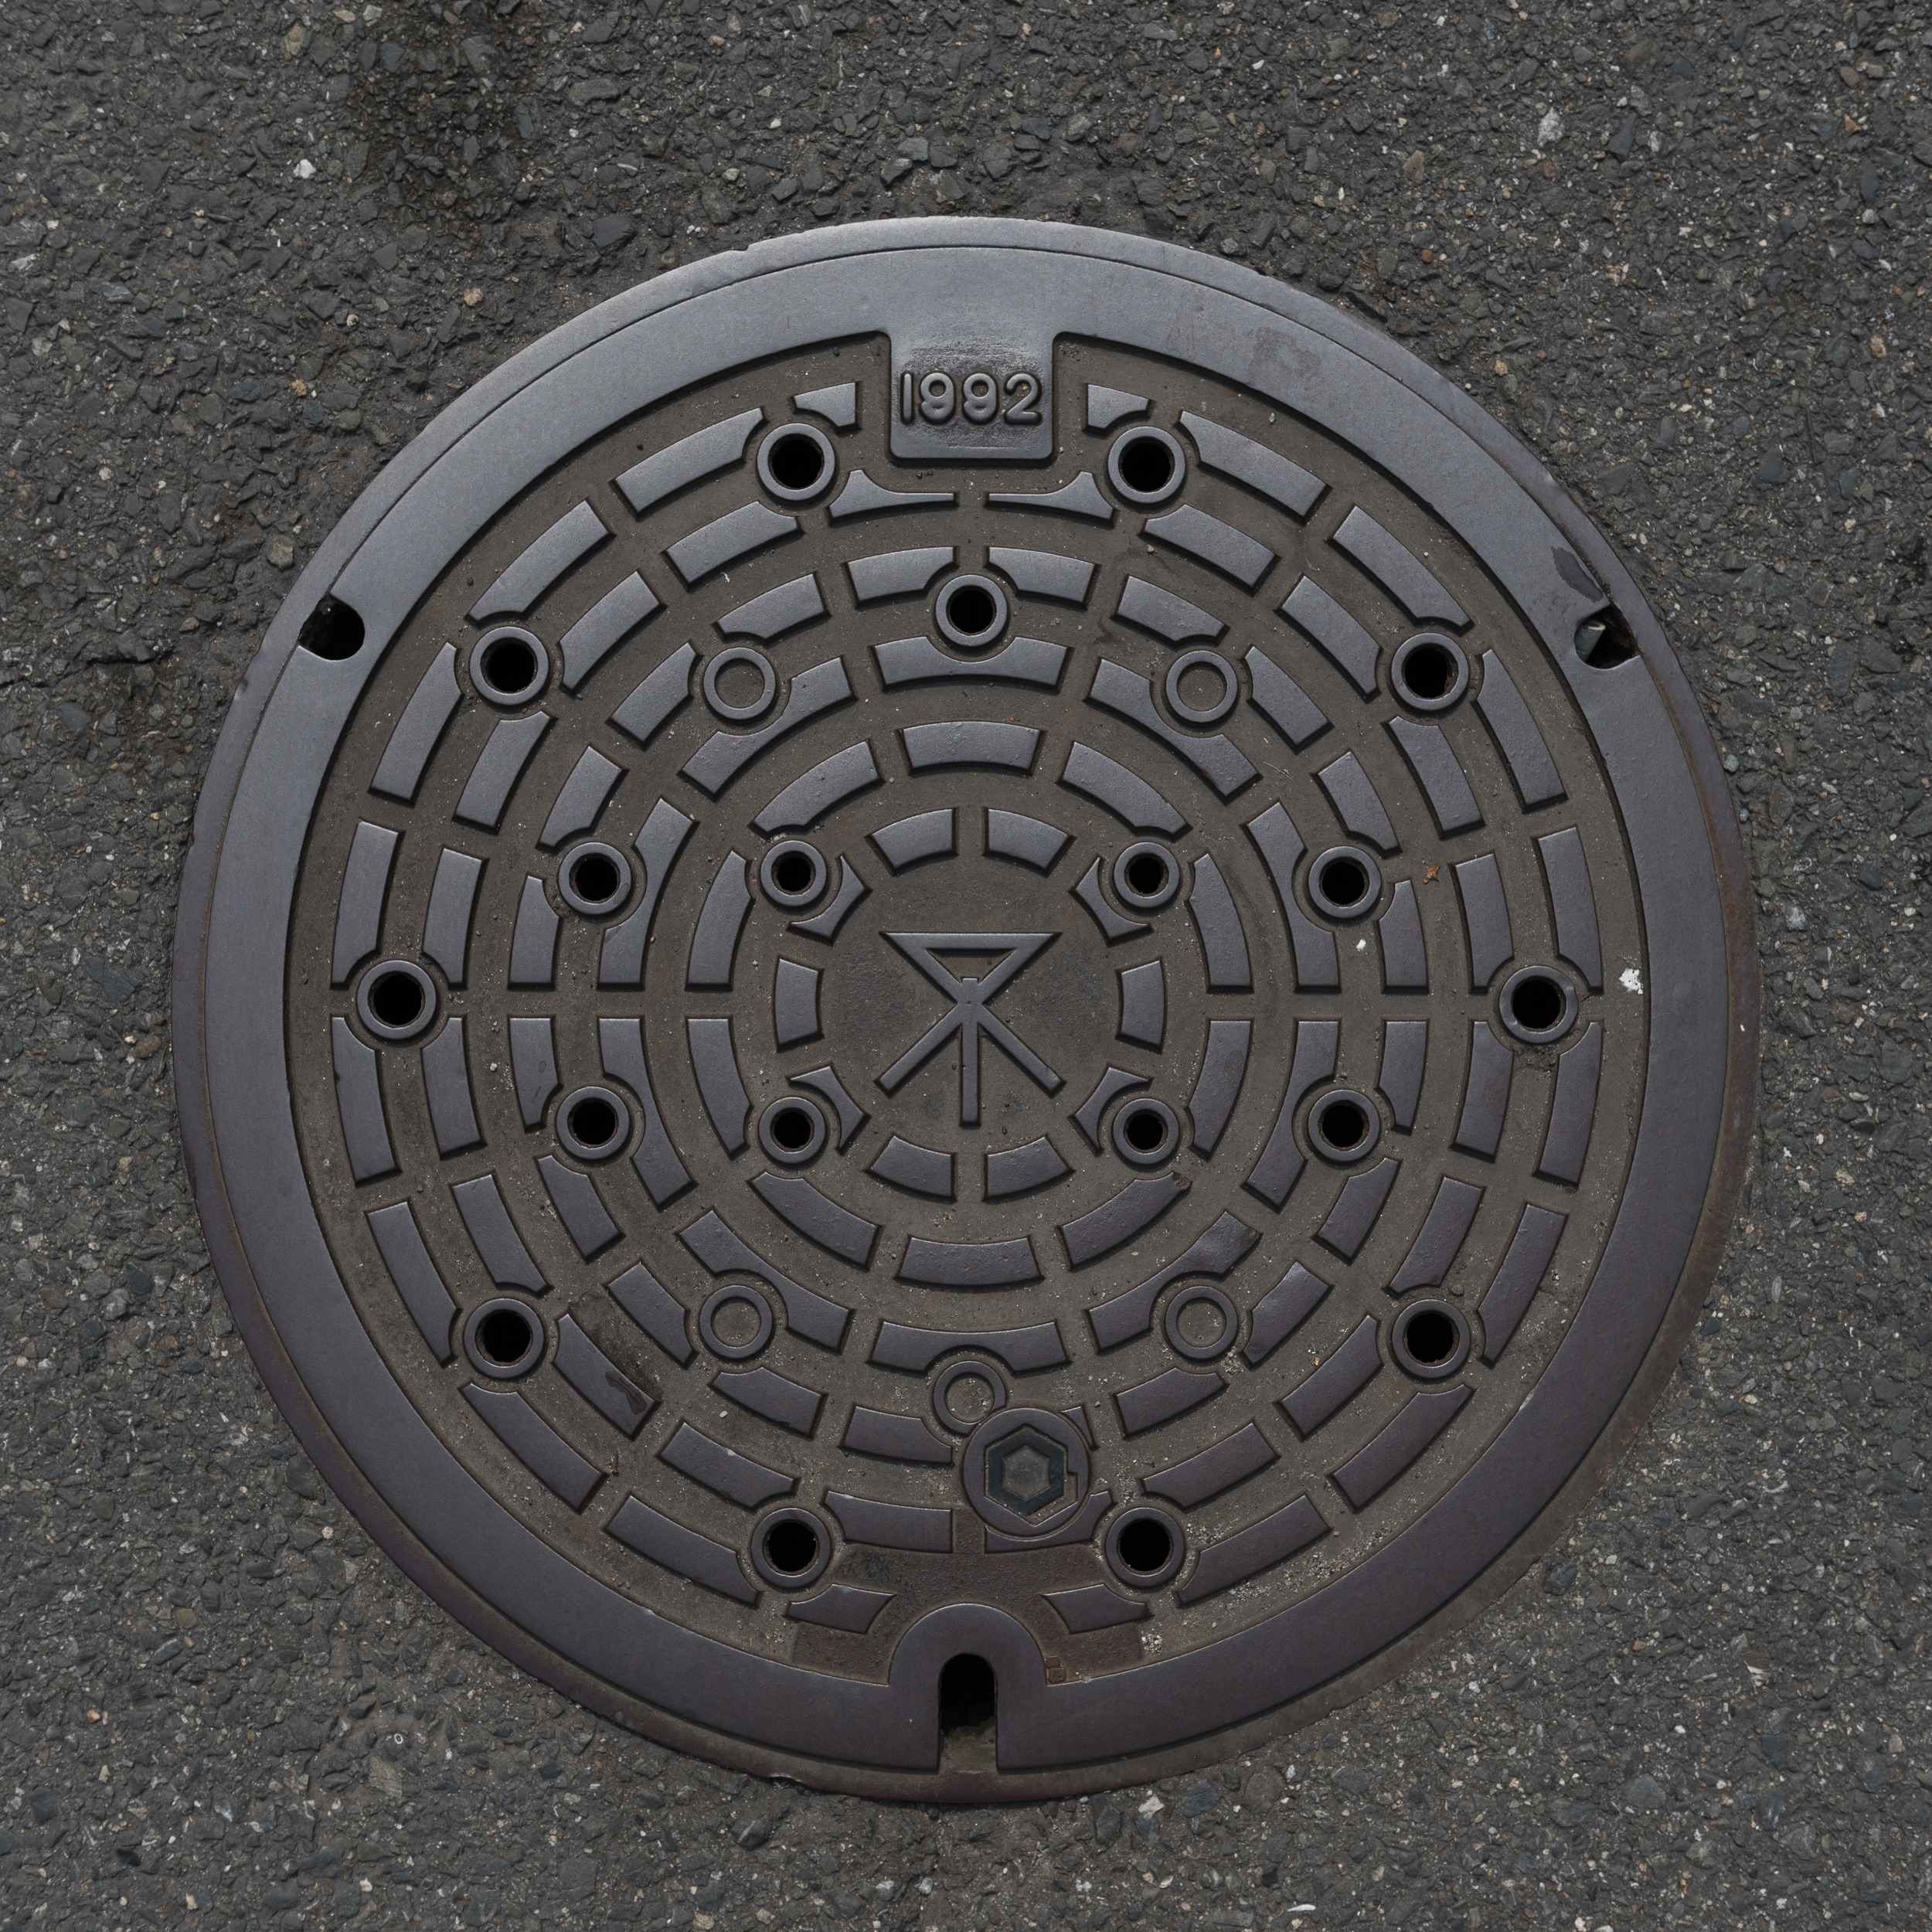 Japan_Manhole-11.jpg